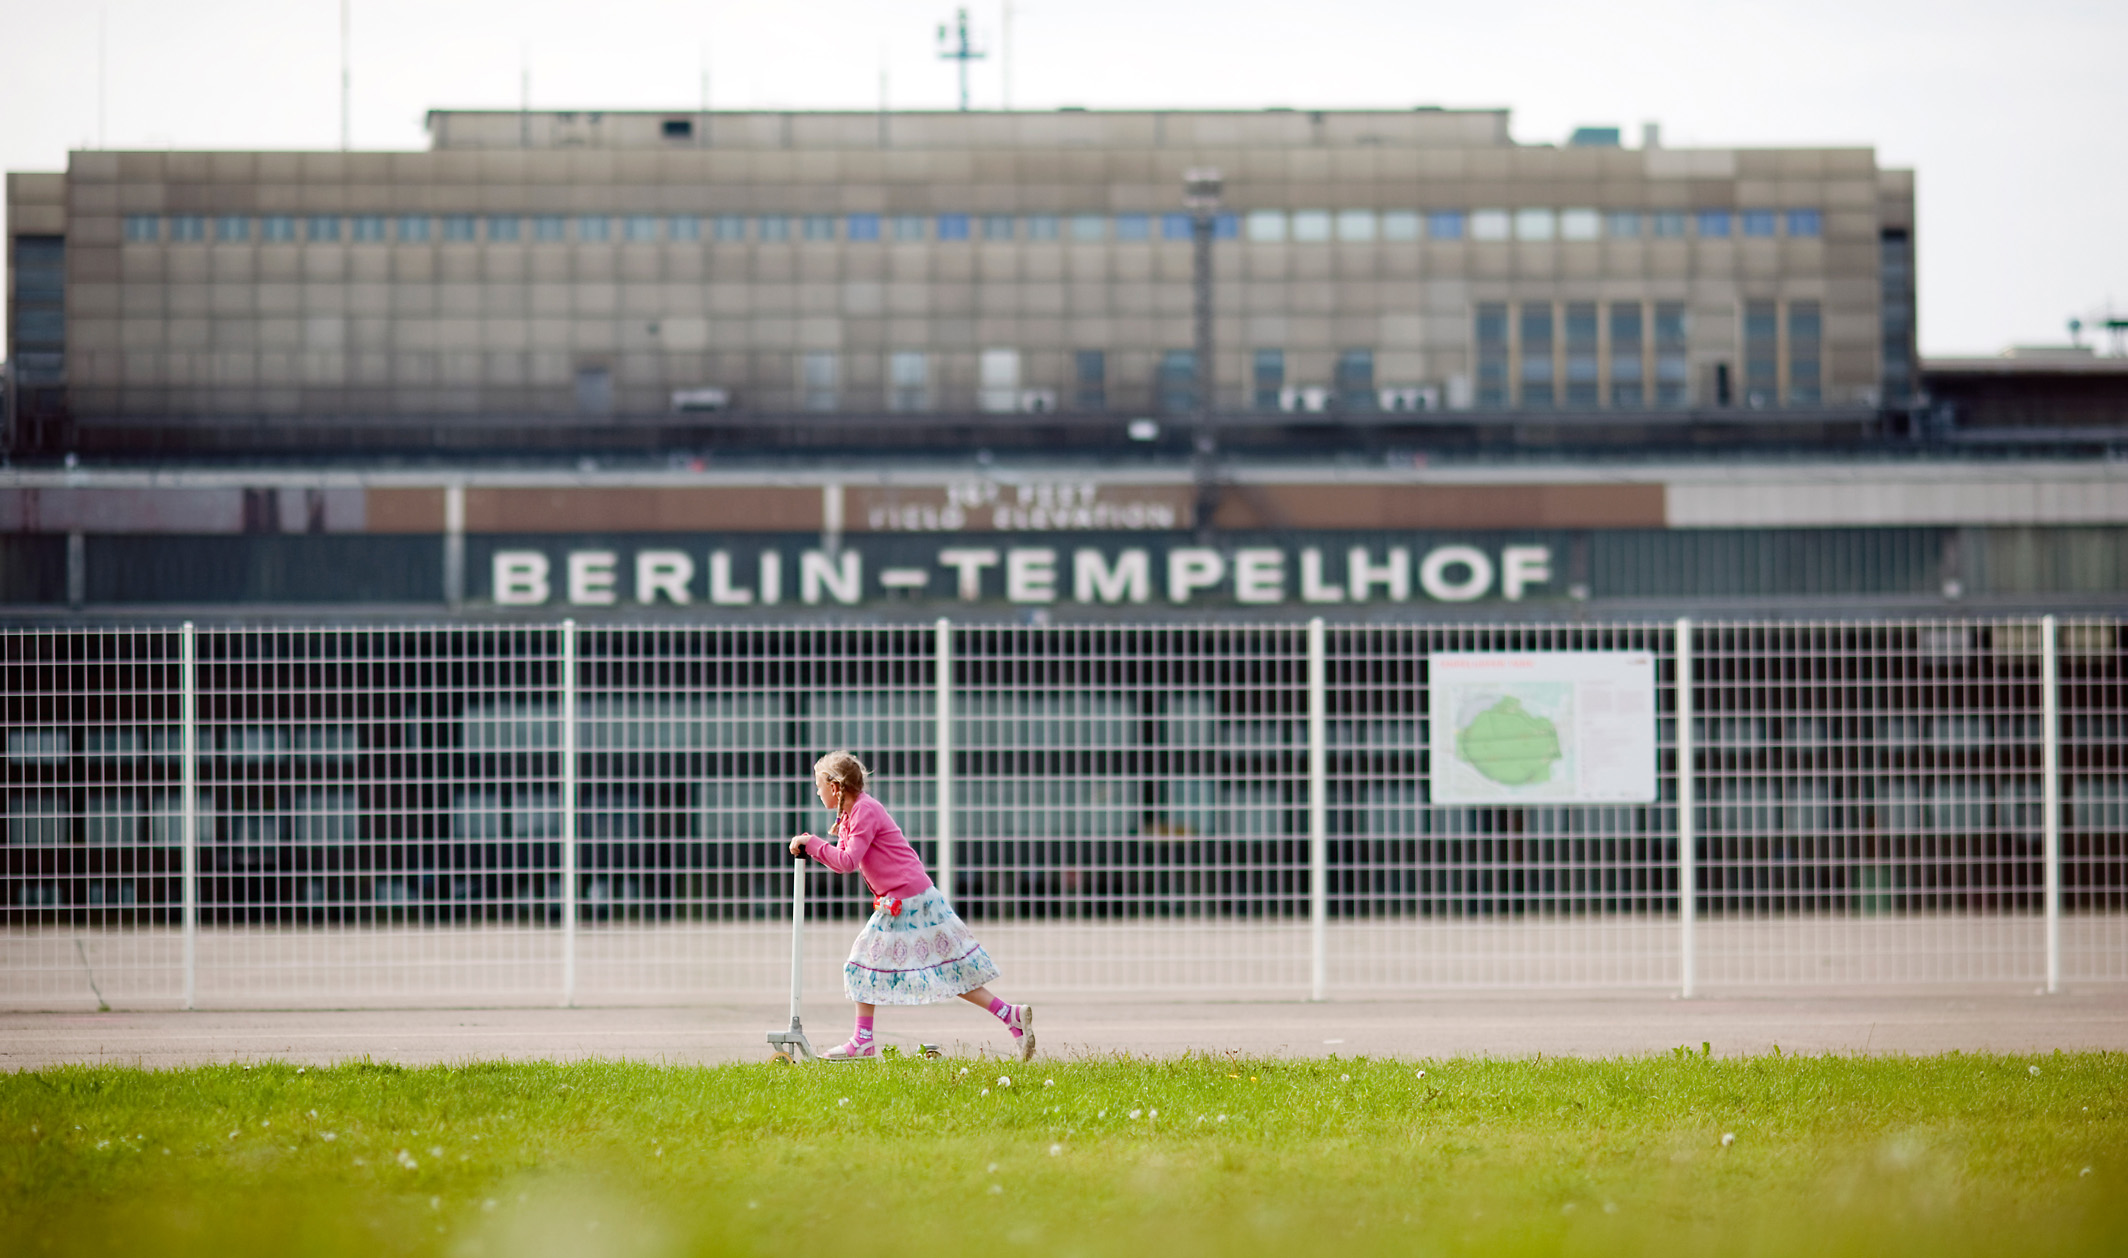 Berlin Tempelhof airport